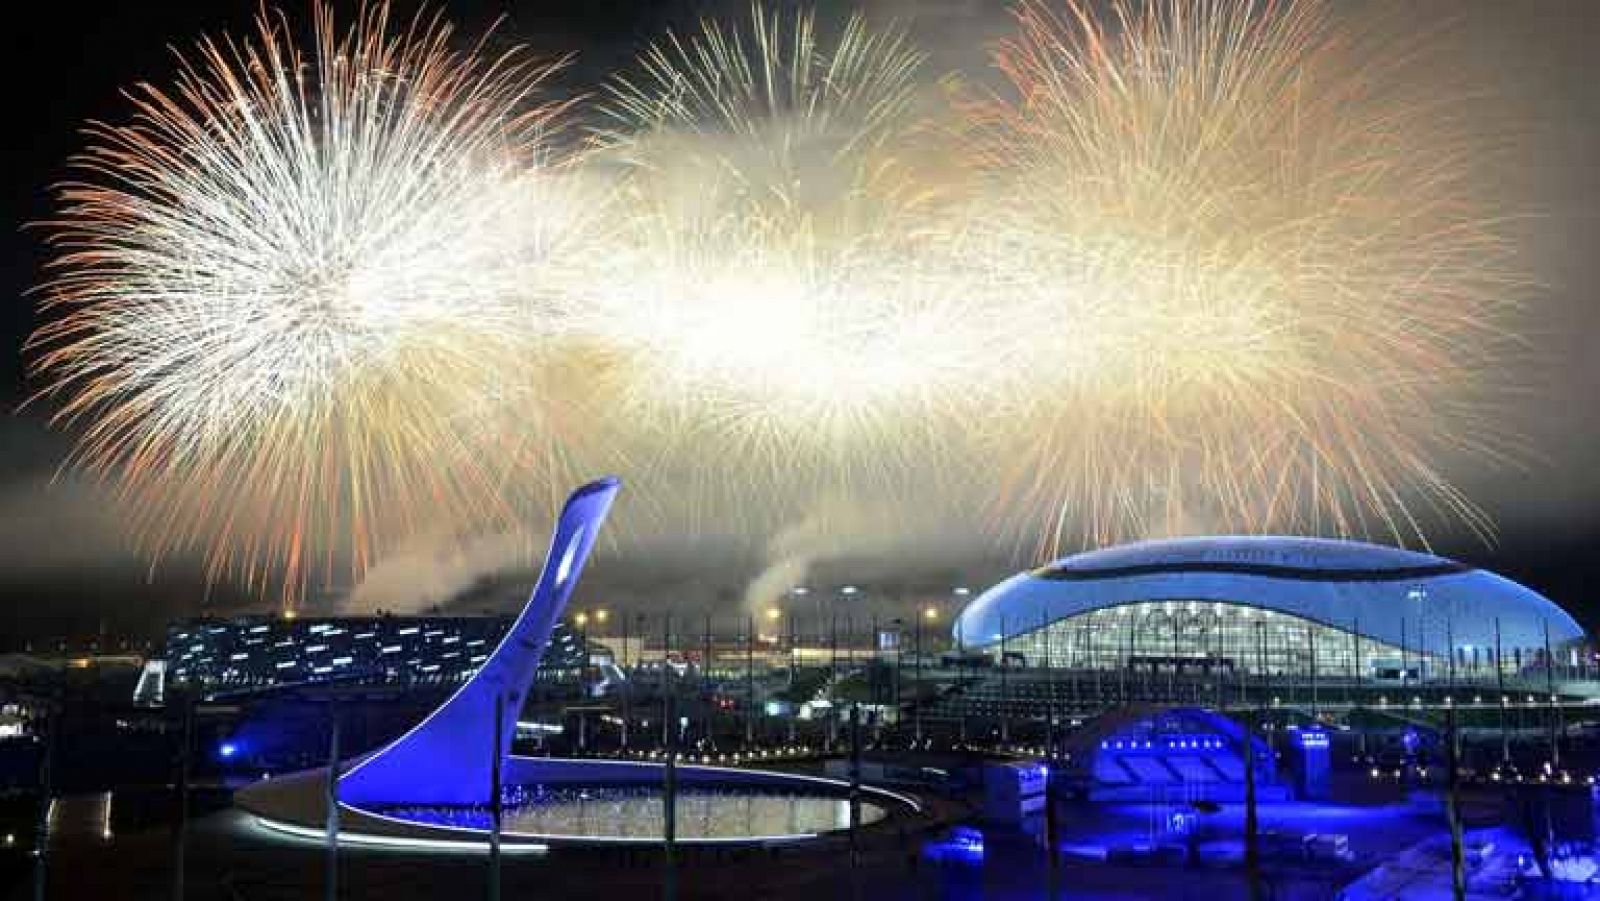 Los XXII Juegos de Invierno de Sochi 2014 llegan a su fin tras 16 días de competición, con el apagado de la llama olímpica del estadio Fisht, a orillas del mar Negro, ante 40.000 espectadores. Los deportistas olímpico de invierno ya han puesto el rel